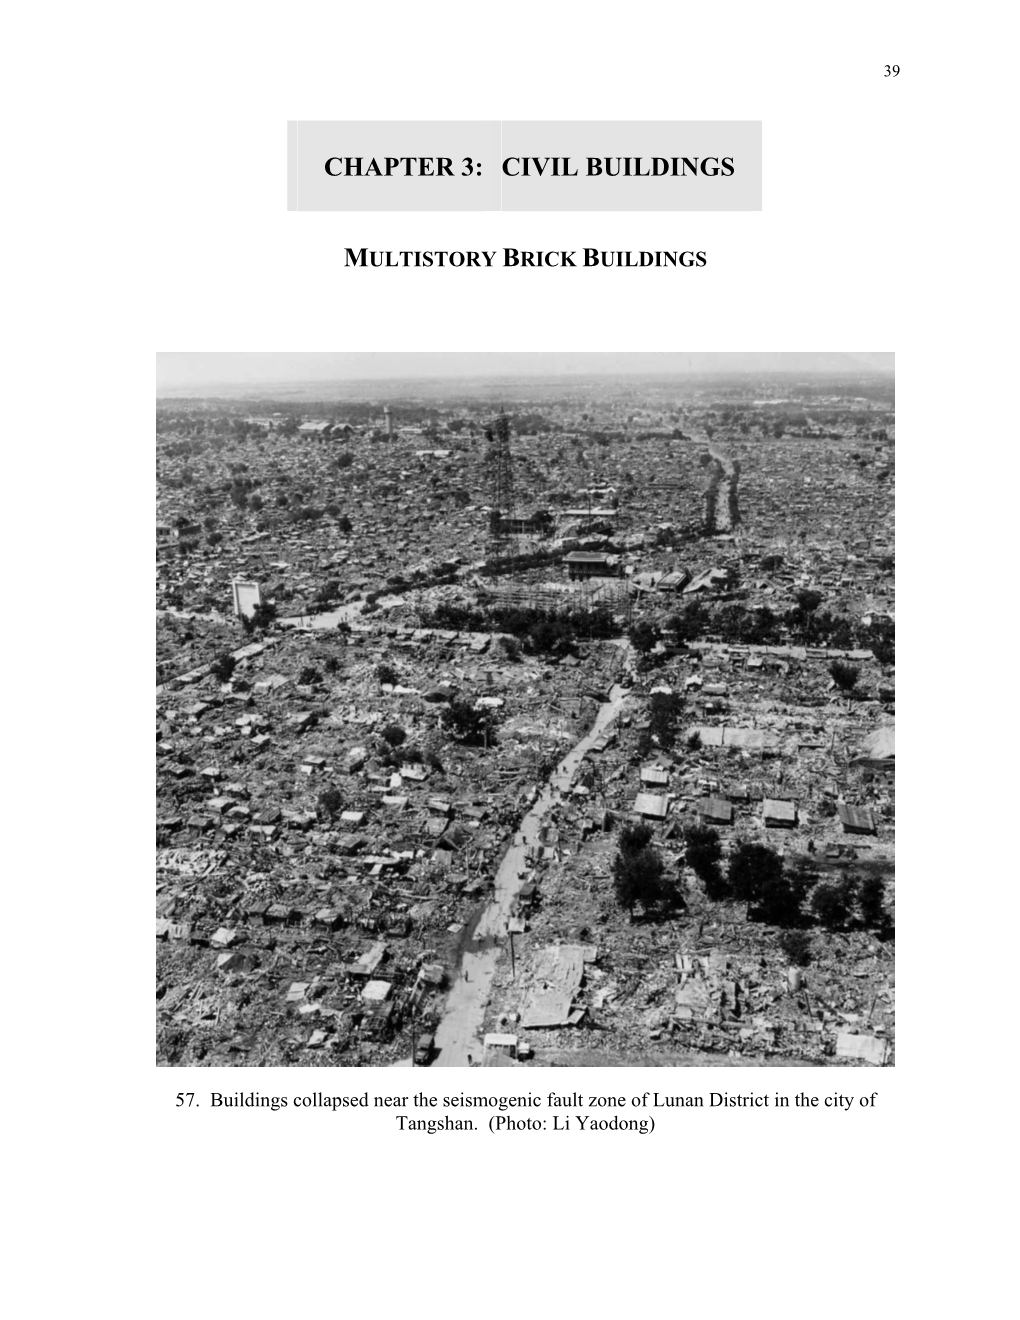 Chapter 3: Civil Buildings